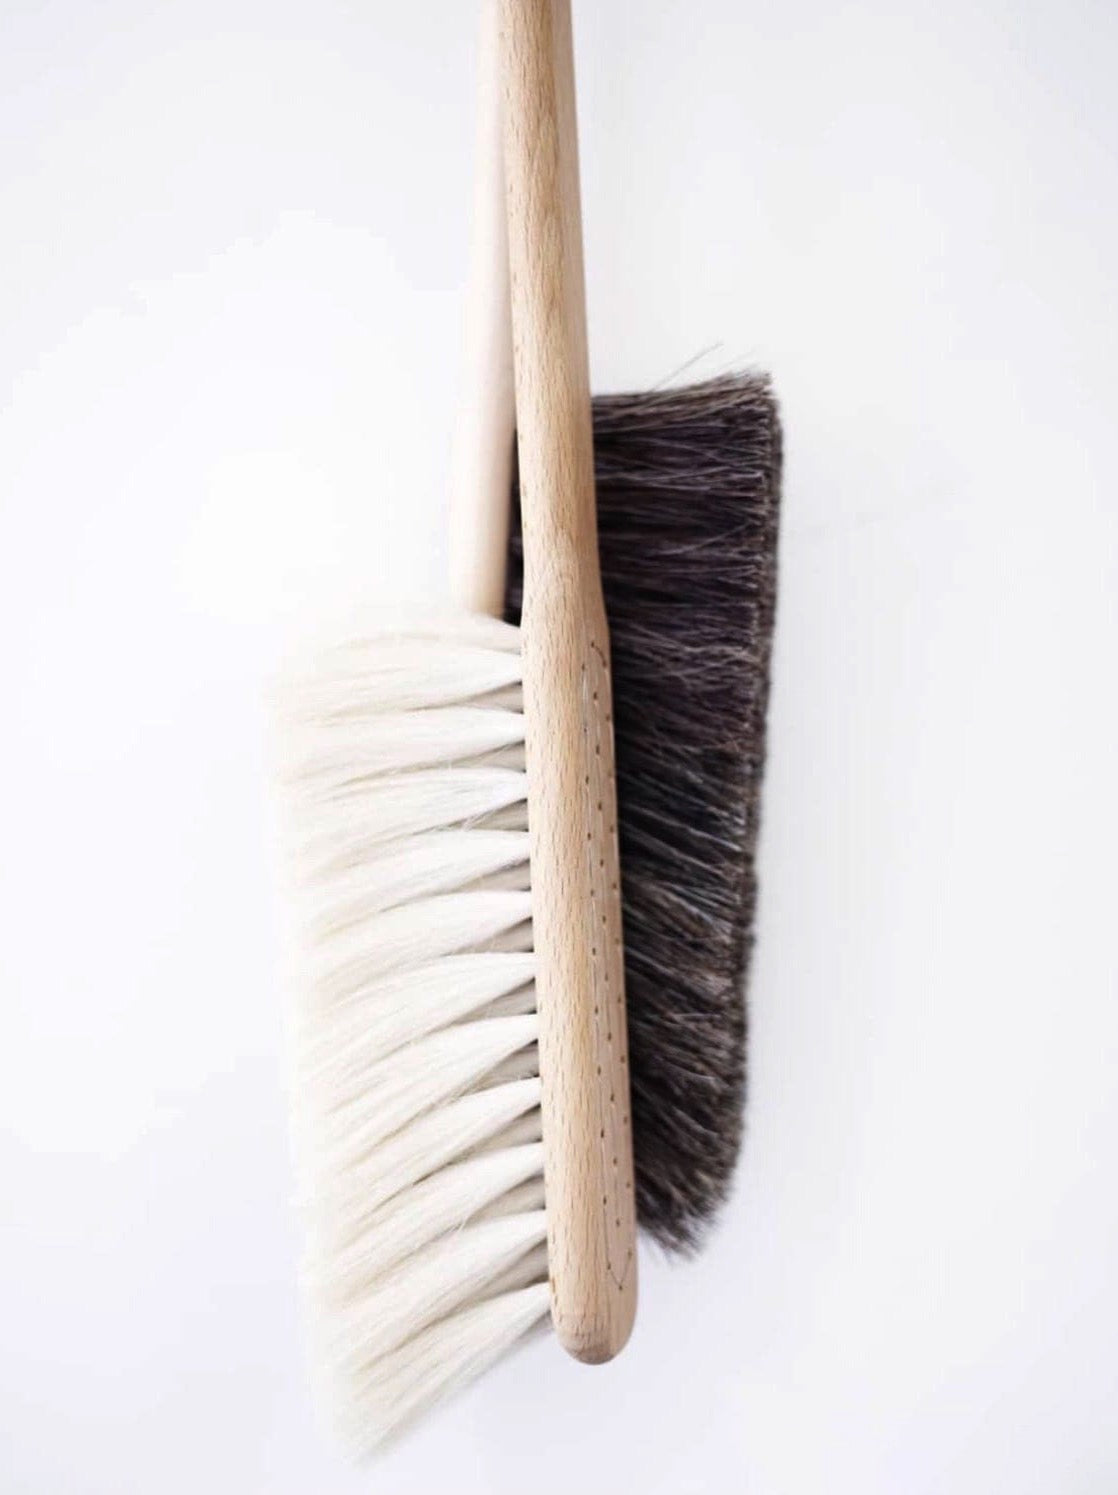 Two Iris Hantverk Dust Brushes – Beechwood &amp; Goat Hair on a white surface.